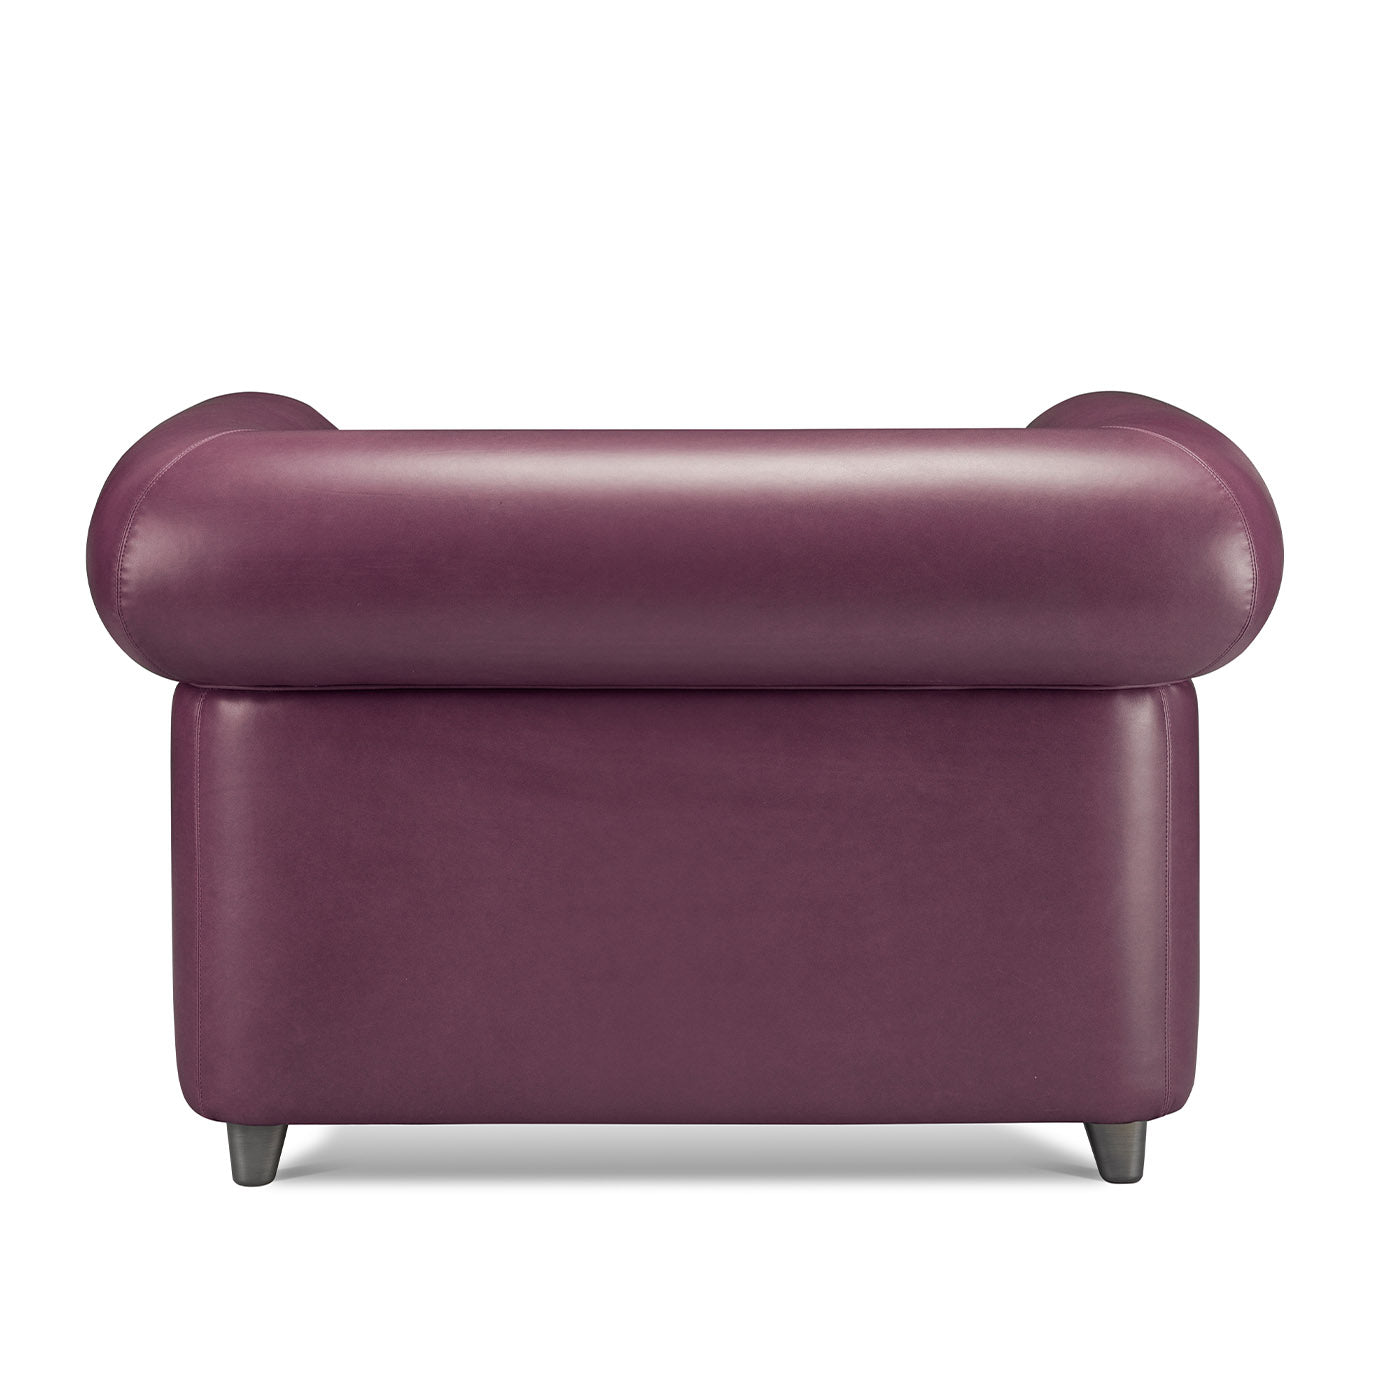 Portofino Purple Armchair by Stefano Giovannoni - Alternative view 2